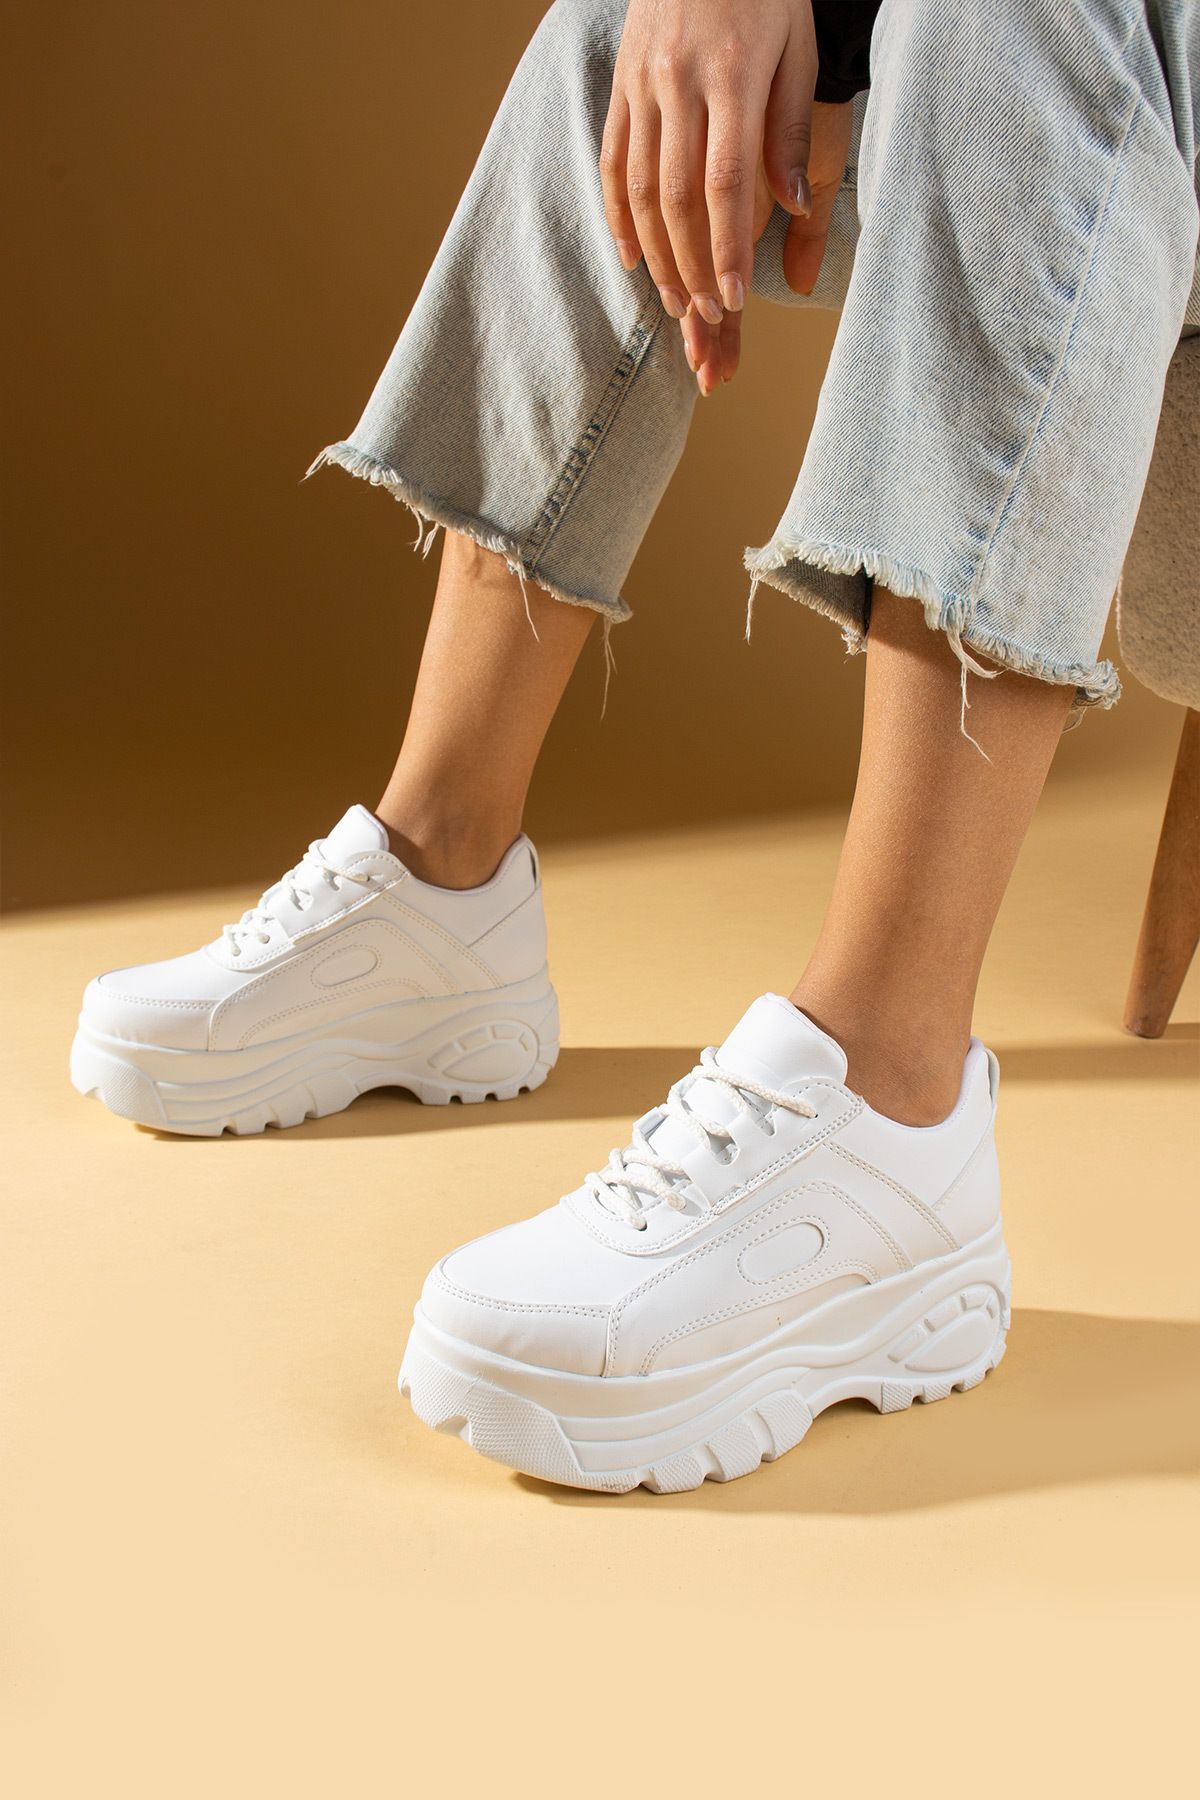 Pembe Potin Beyaz Kadın Spor Sneaker Bağcıklı Günlük Kalın Rahat Taban Ayakkabı